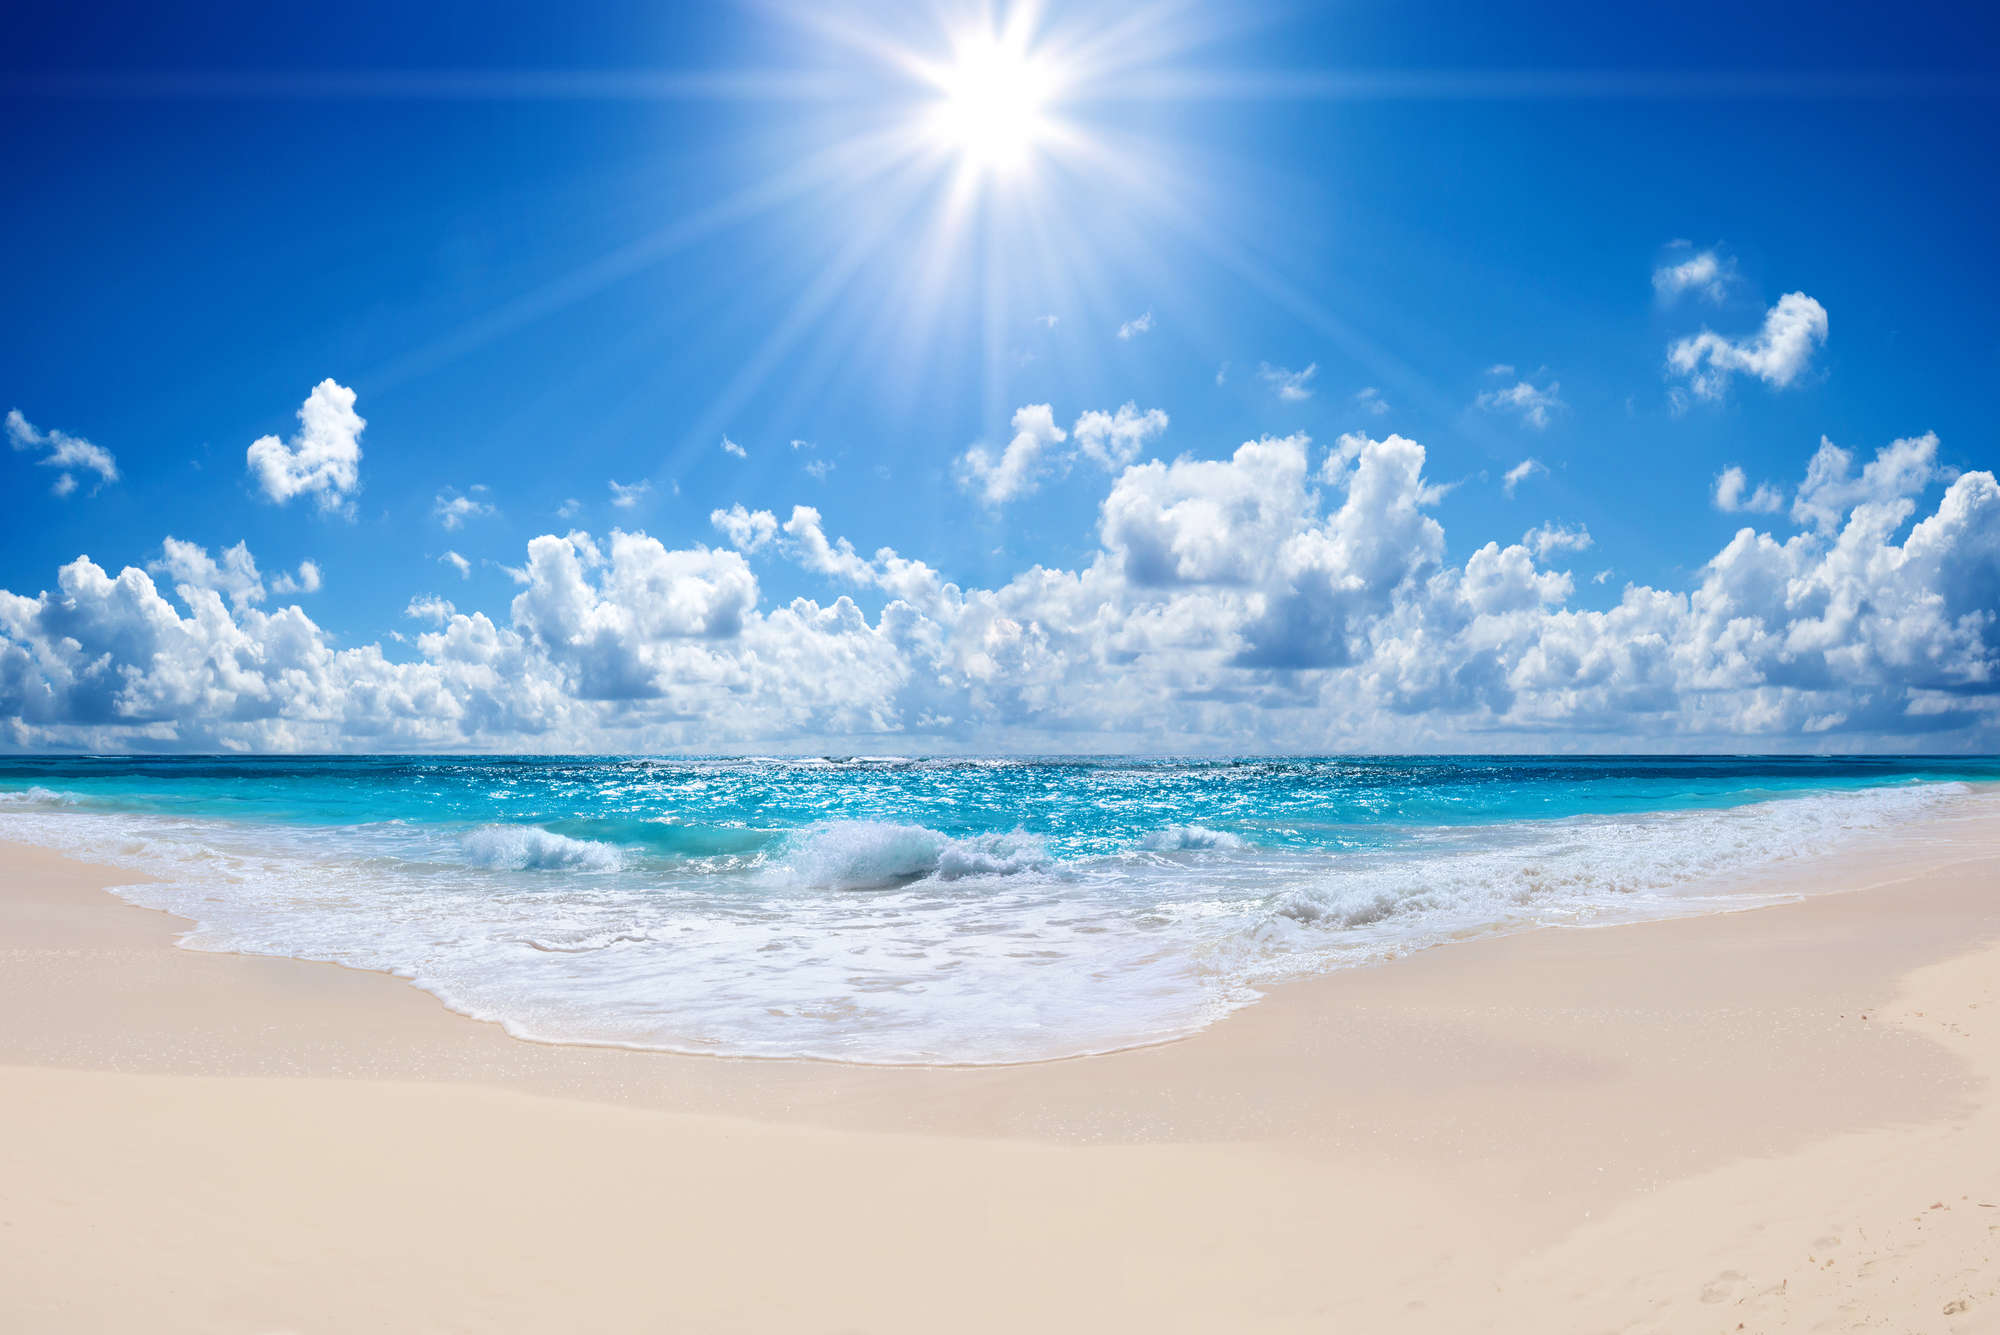             Strand Fototapete Wellengang mit strahlender Sonne auf Premium Glattvlies
        